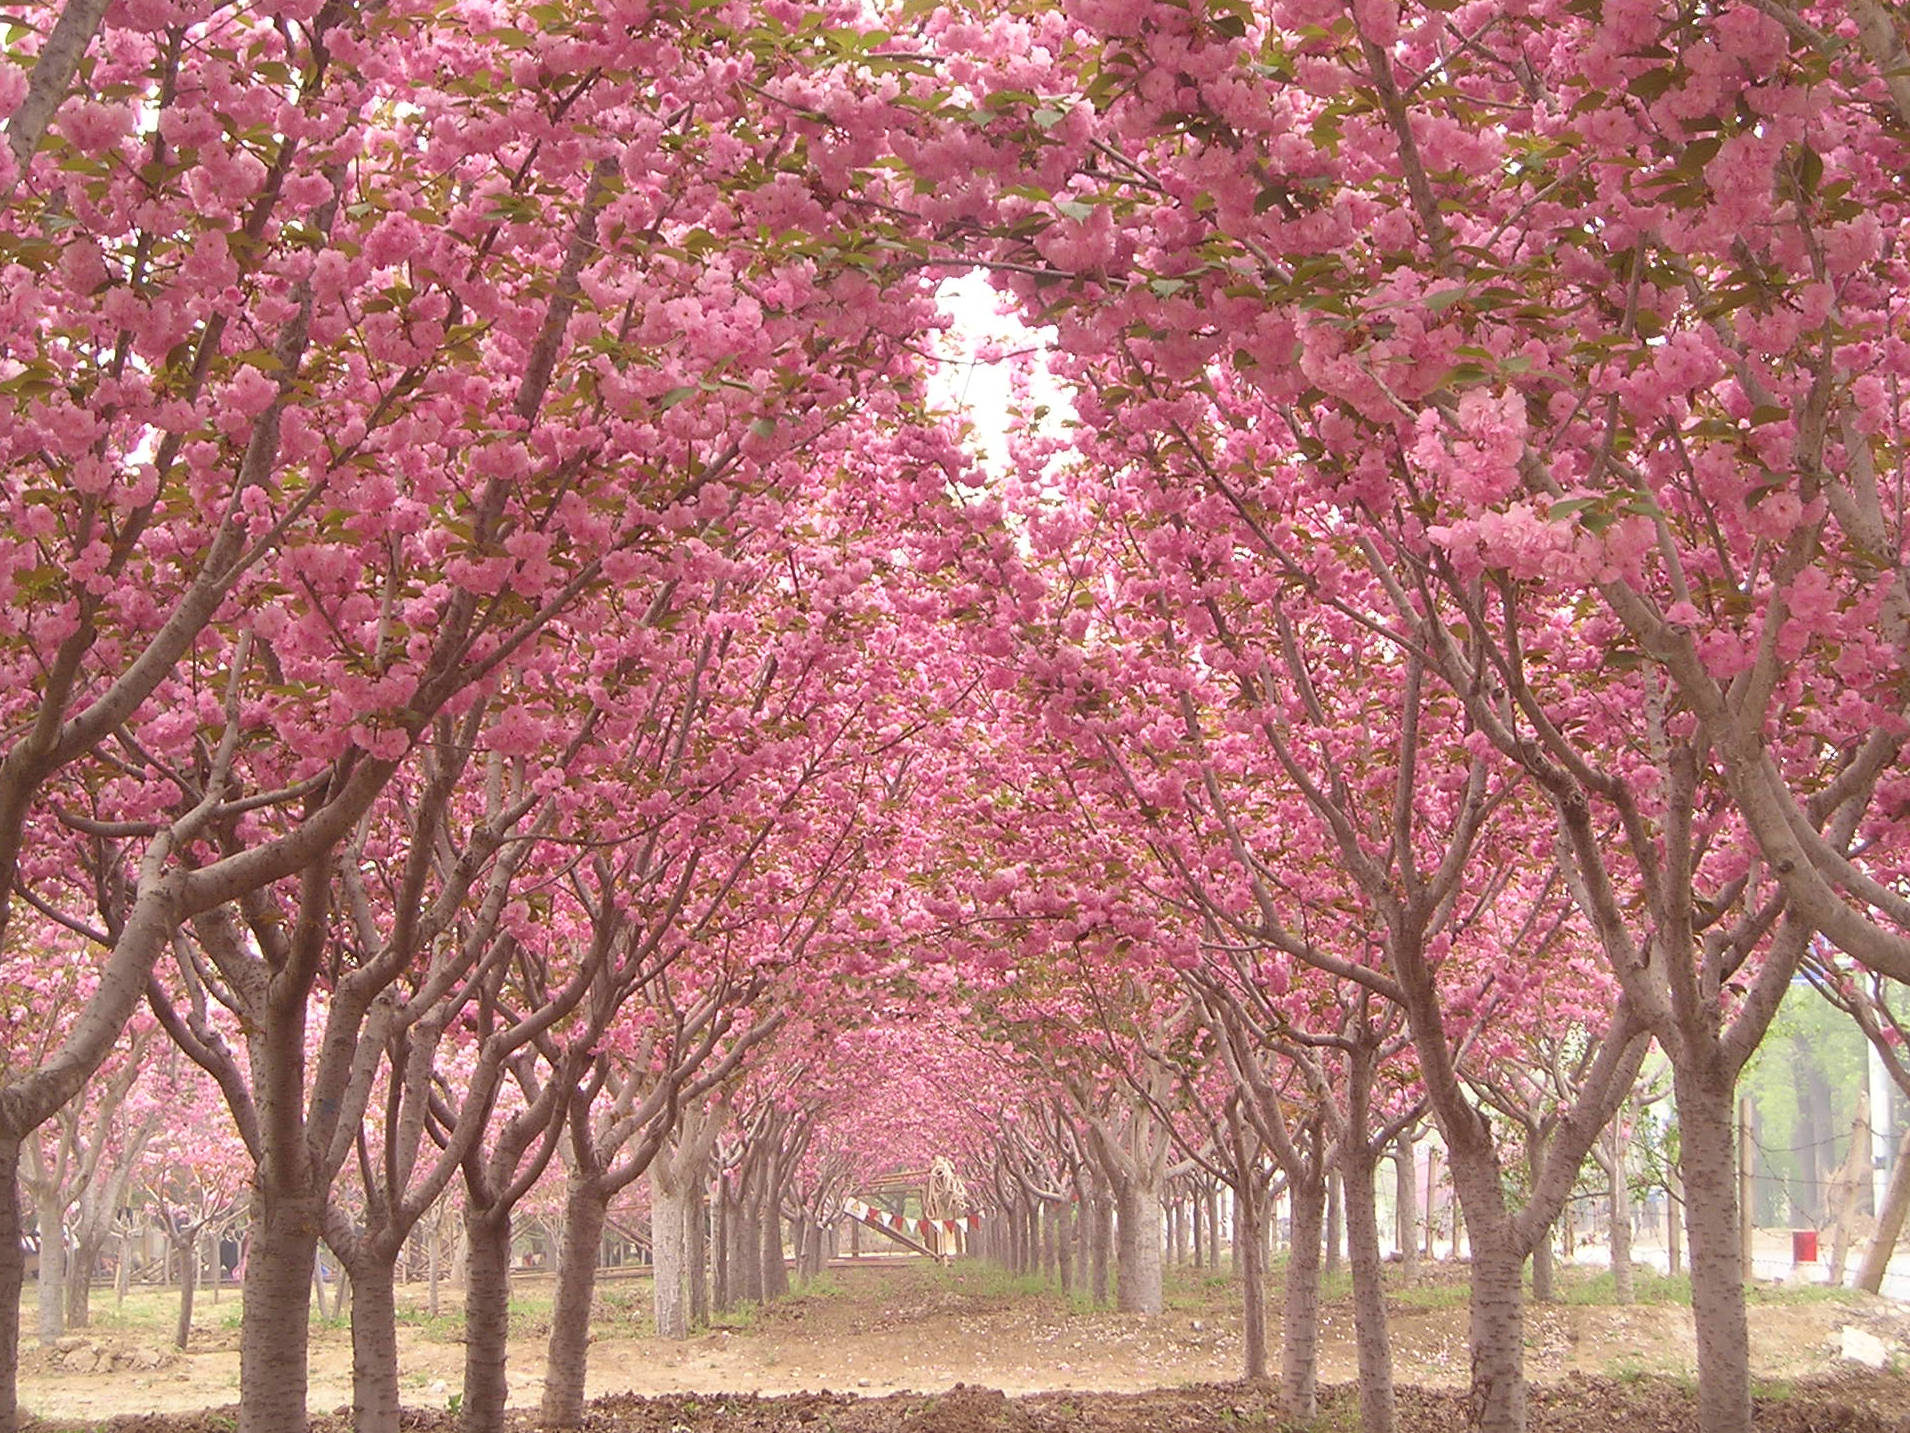 樱花树和樱桃树的区别